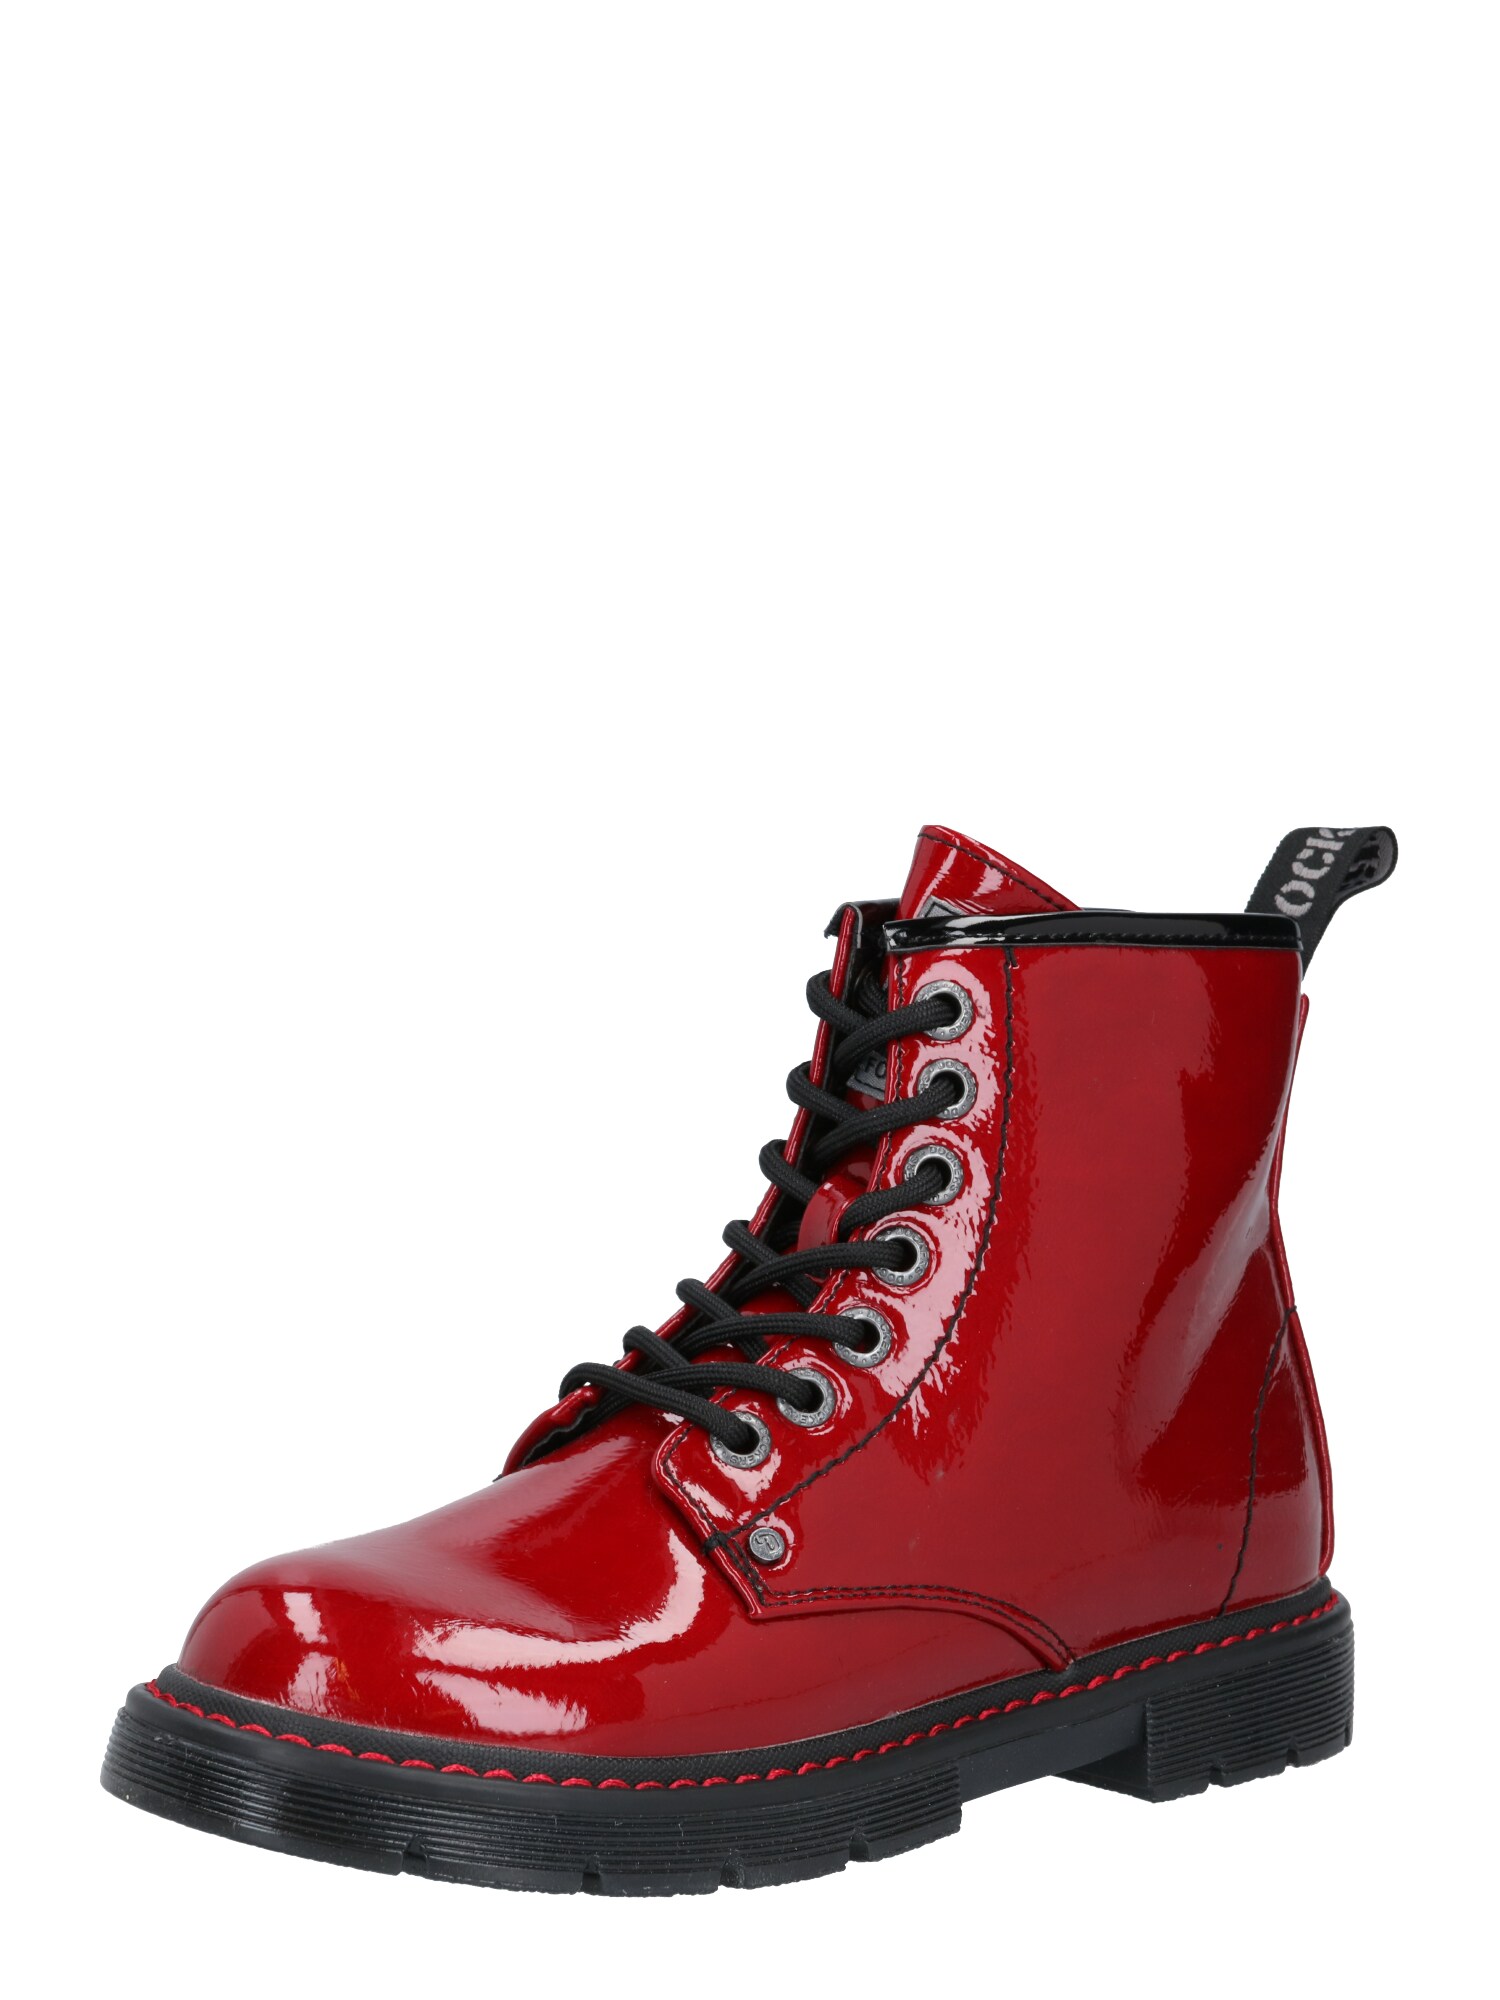 Dockers by Gerli Auliniai batai su kulniuku  juoda / karmino raudona